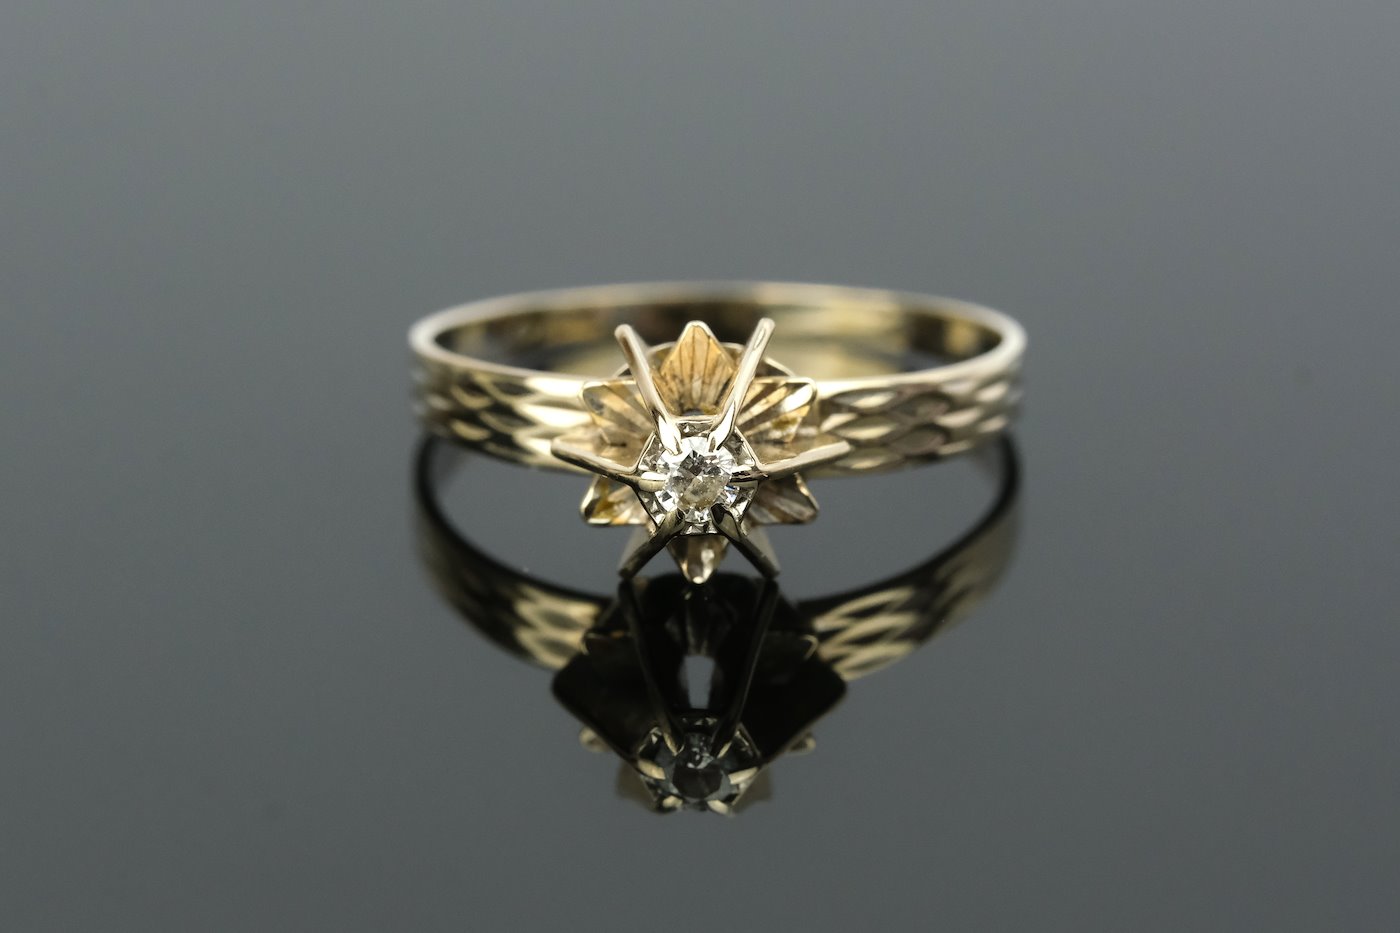 .. - Prsten s diamantem 0,05 ct, zlato 750/1000, značeno platnou puncovní značkou "kohout", hrubá hmotnost 2,10 g